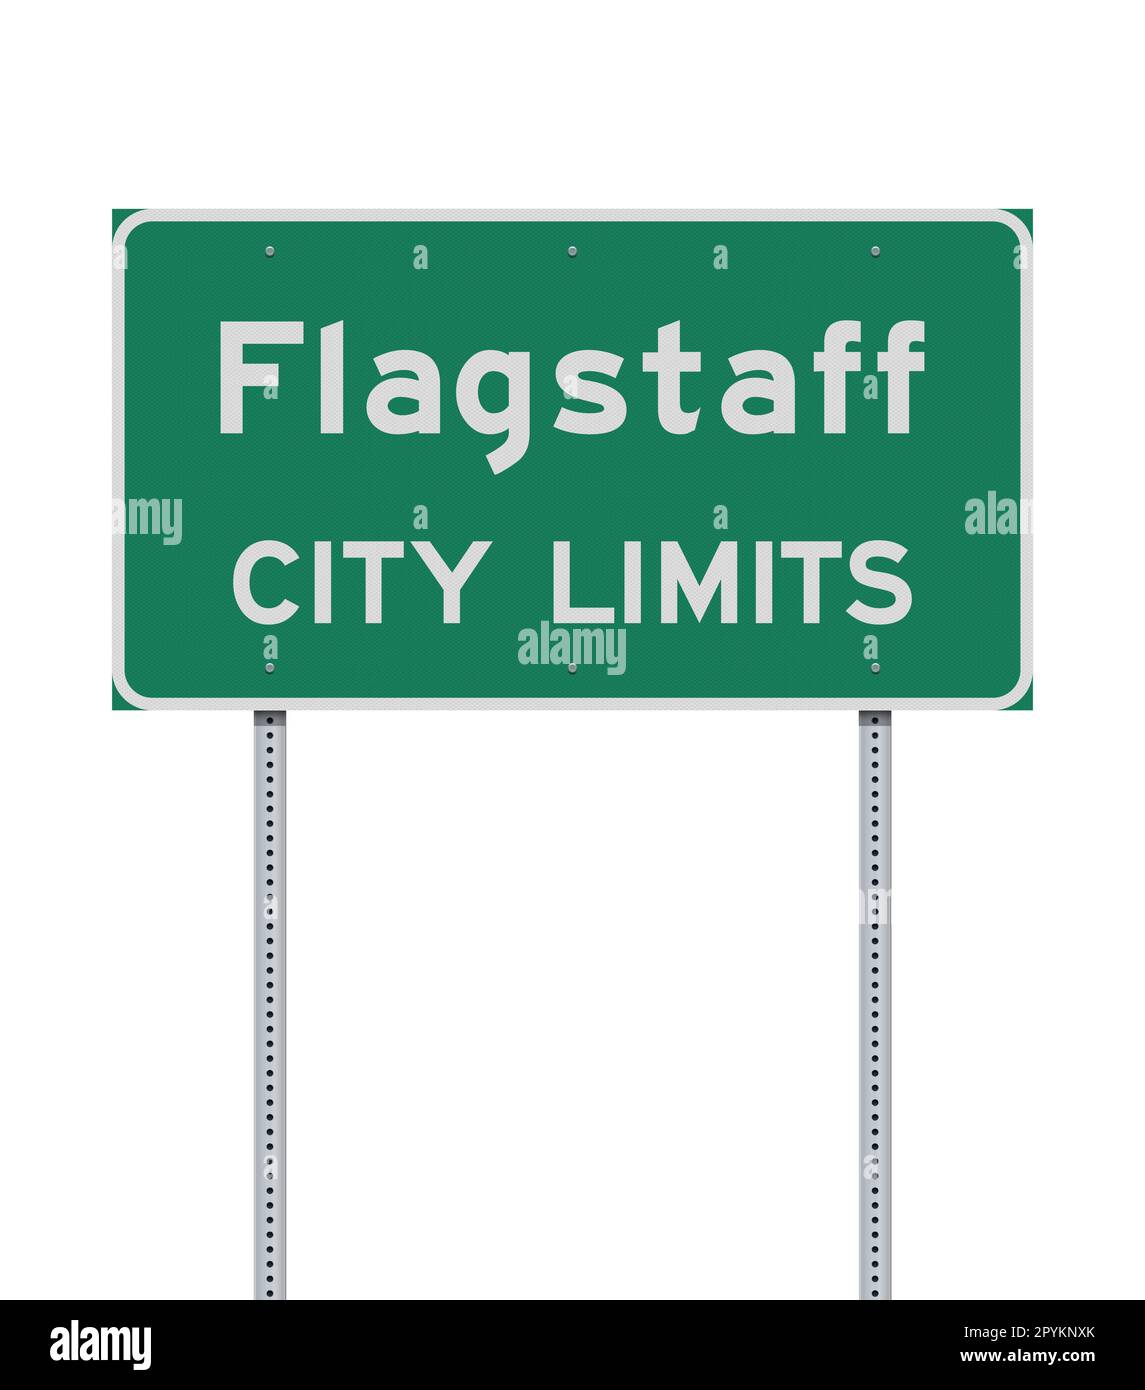 Illustrazione vettoriale del cartello stradale verde Flagstaff (Arizona) City Limits su pali metallici Illustrazione Vettoriale